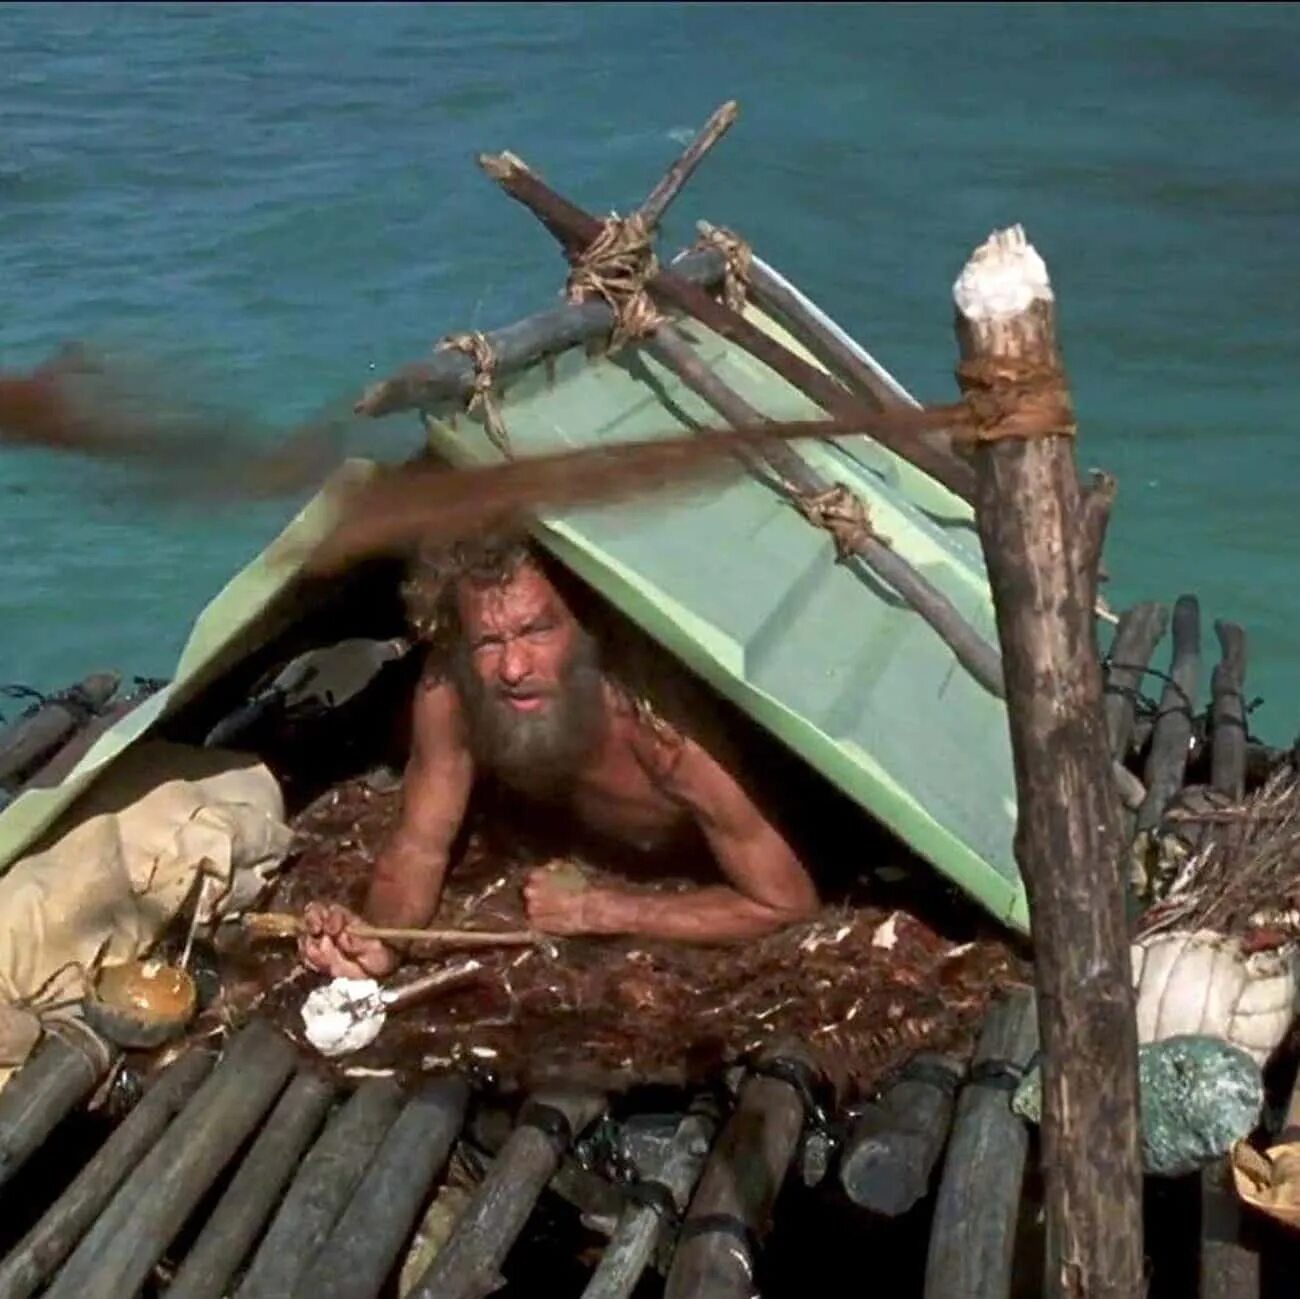 Человек живший на необитаемом острове. Необитаемый остров Робинзона Крузо.